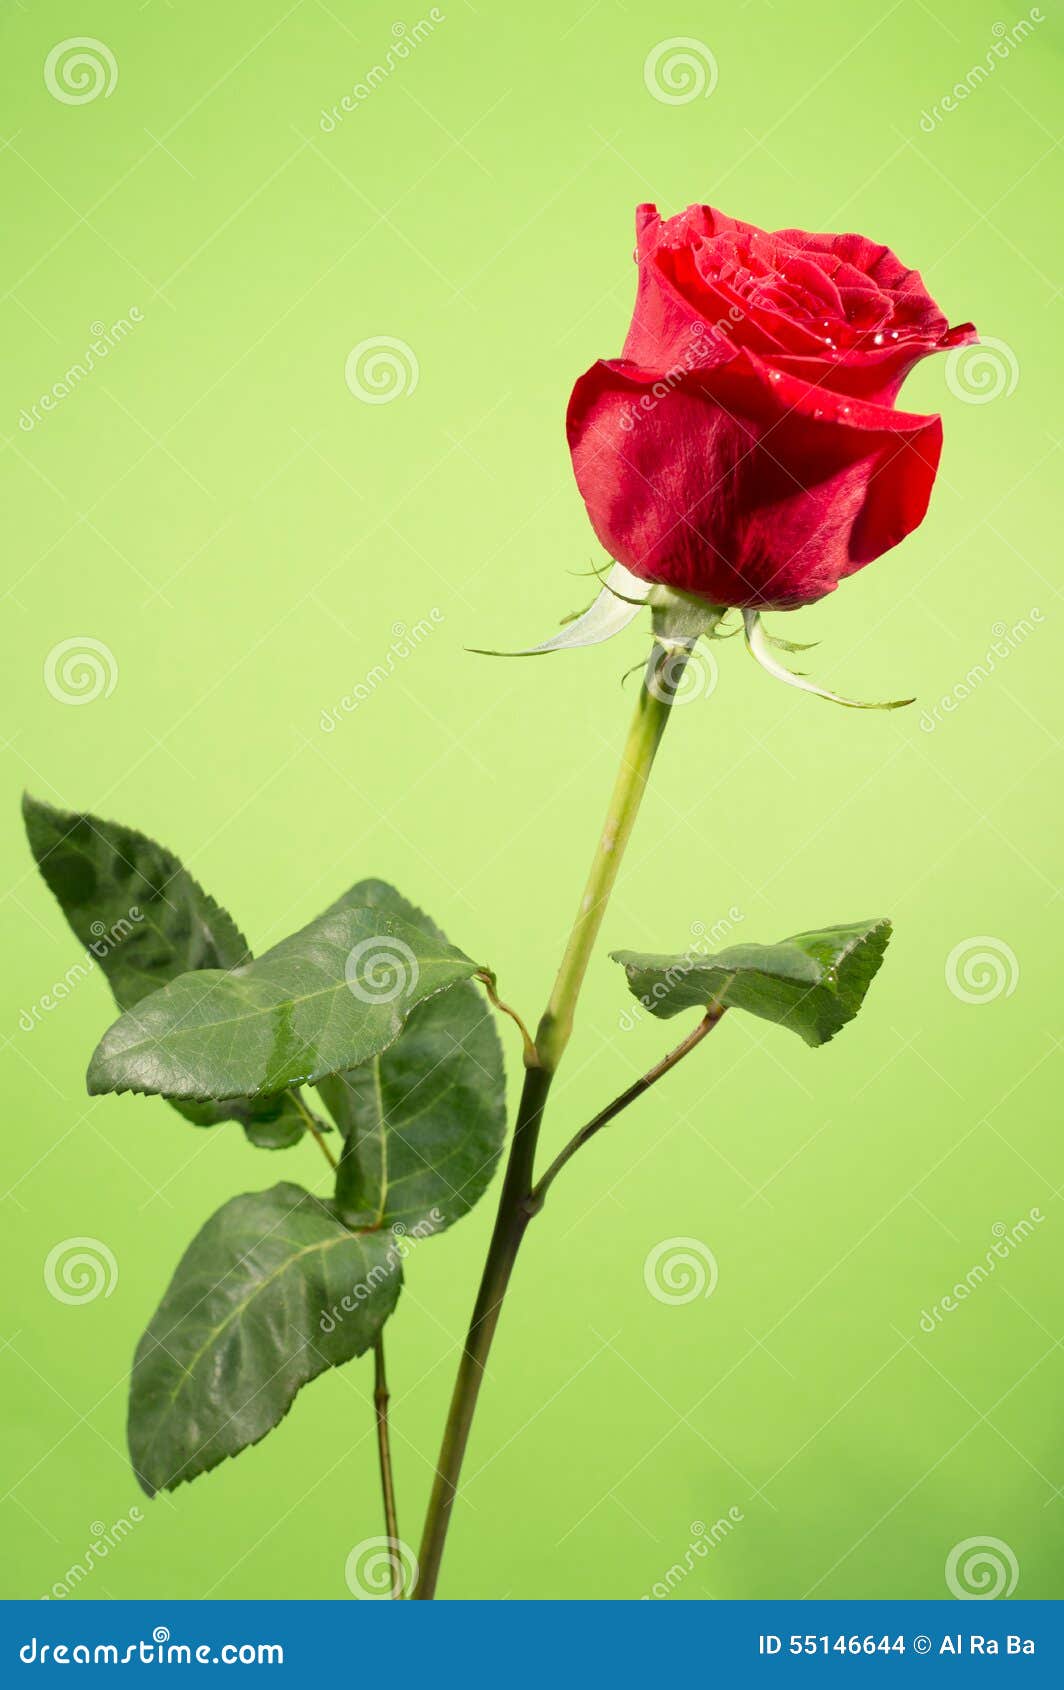 Hoa Hồng Đỏ (Red rose): Với độ sắc nét và độ tươi sáng của một nụ Hoa Hồng Đỏ, hình ảnh này chỉ đơn giản là đẹp đến ngỡ ngàng. Hãy cùng tận hưởng sự rực rỡ và ấm áp của một nụ hoa hồng đỏ tuyệt vời.